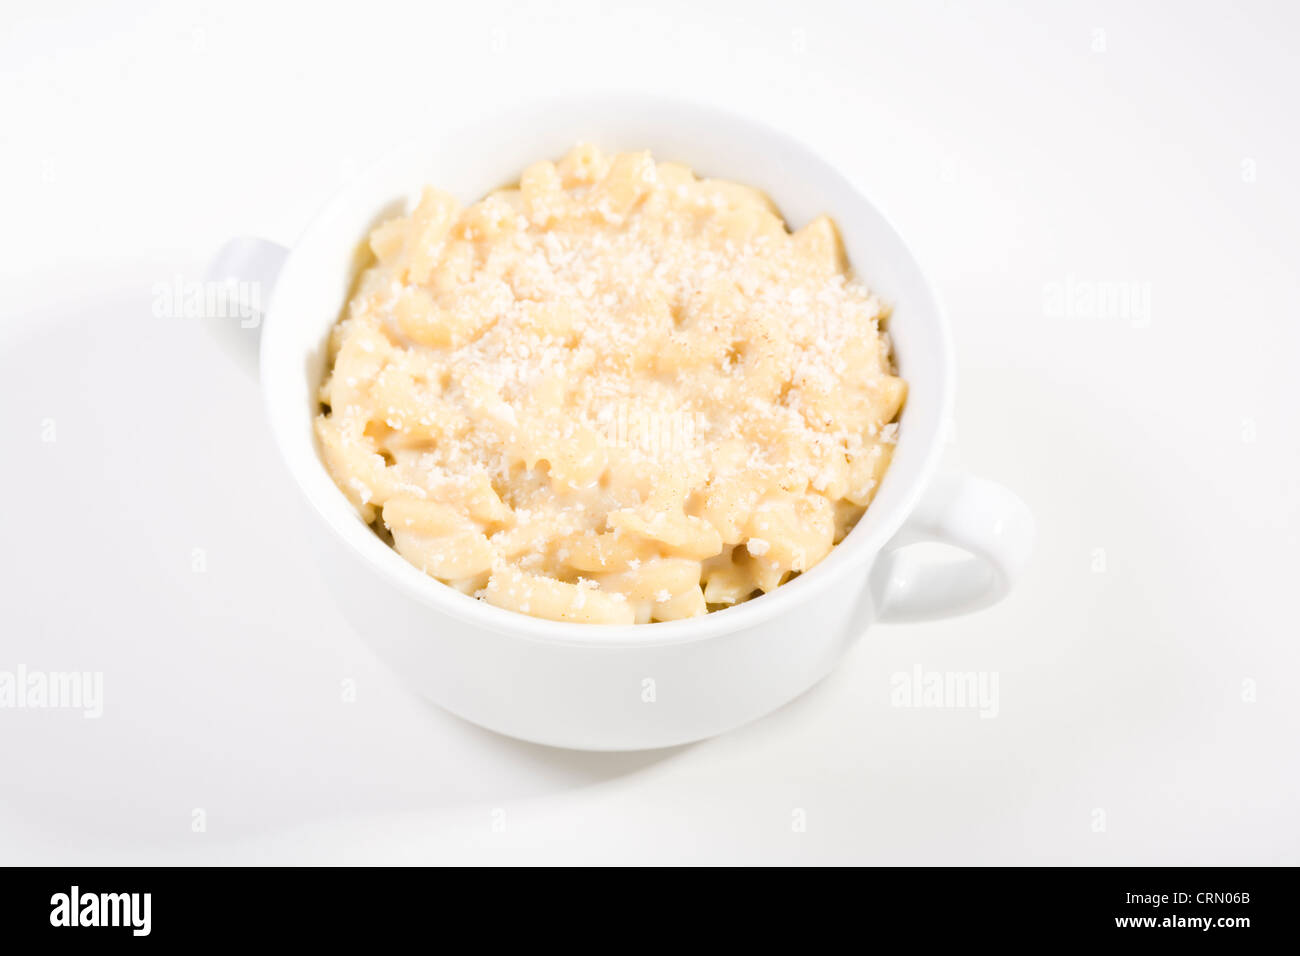 Macaroni au fromage vegan 'et' faite avec du lait de soja et la levure alimentaire surmontée de chapelure sur blanc Banque D'Images